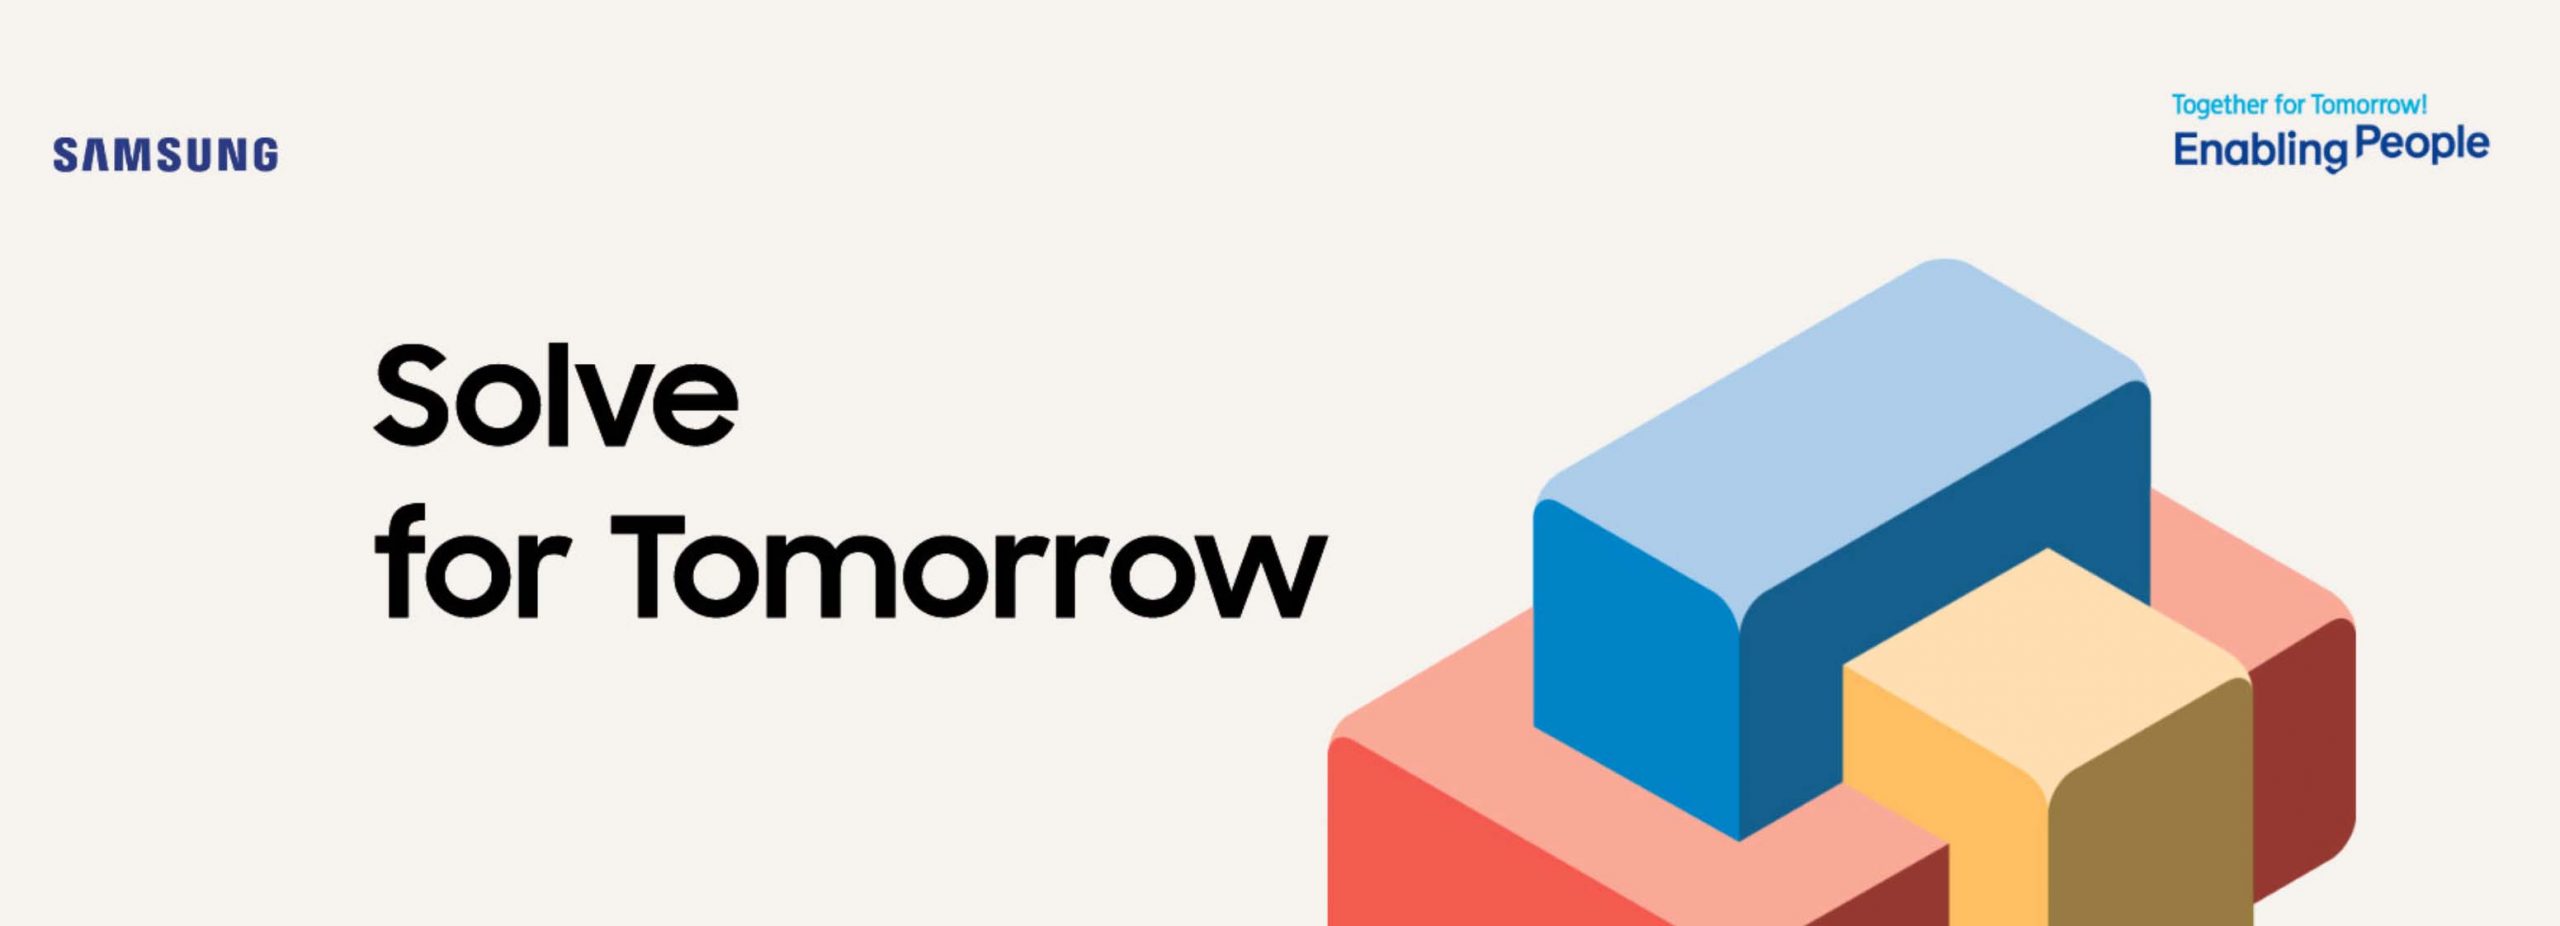 Cuộc thi Solve for Tomorrow 2021 chính thức khởi động: Samsung trao cơ hội cho thế hệ trẻ tiên phong với những thay đổi tích cực trong cộng đồng